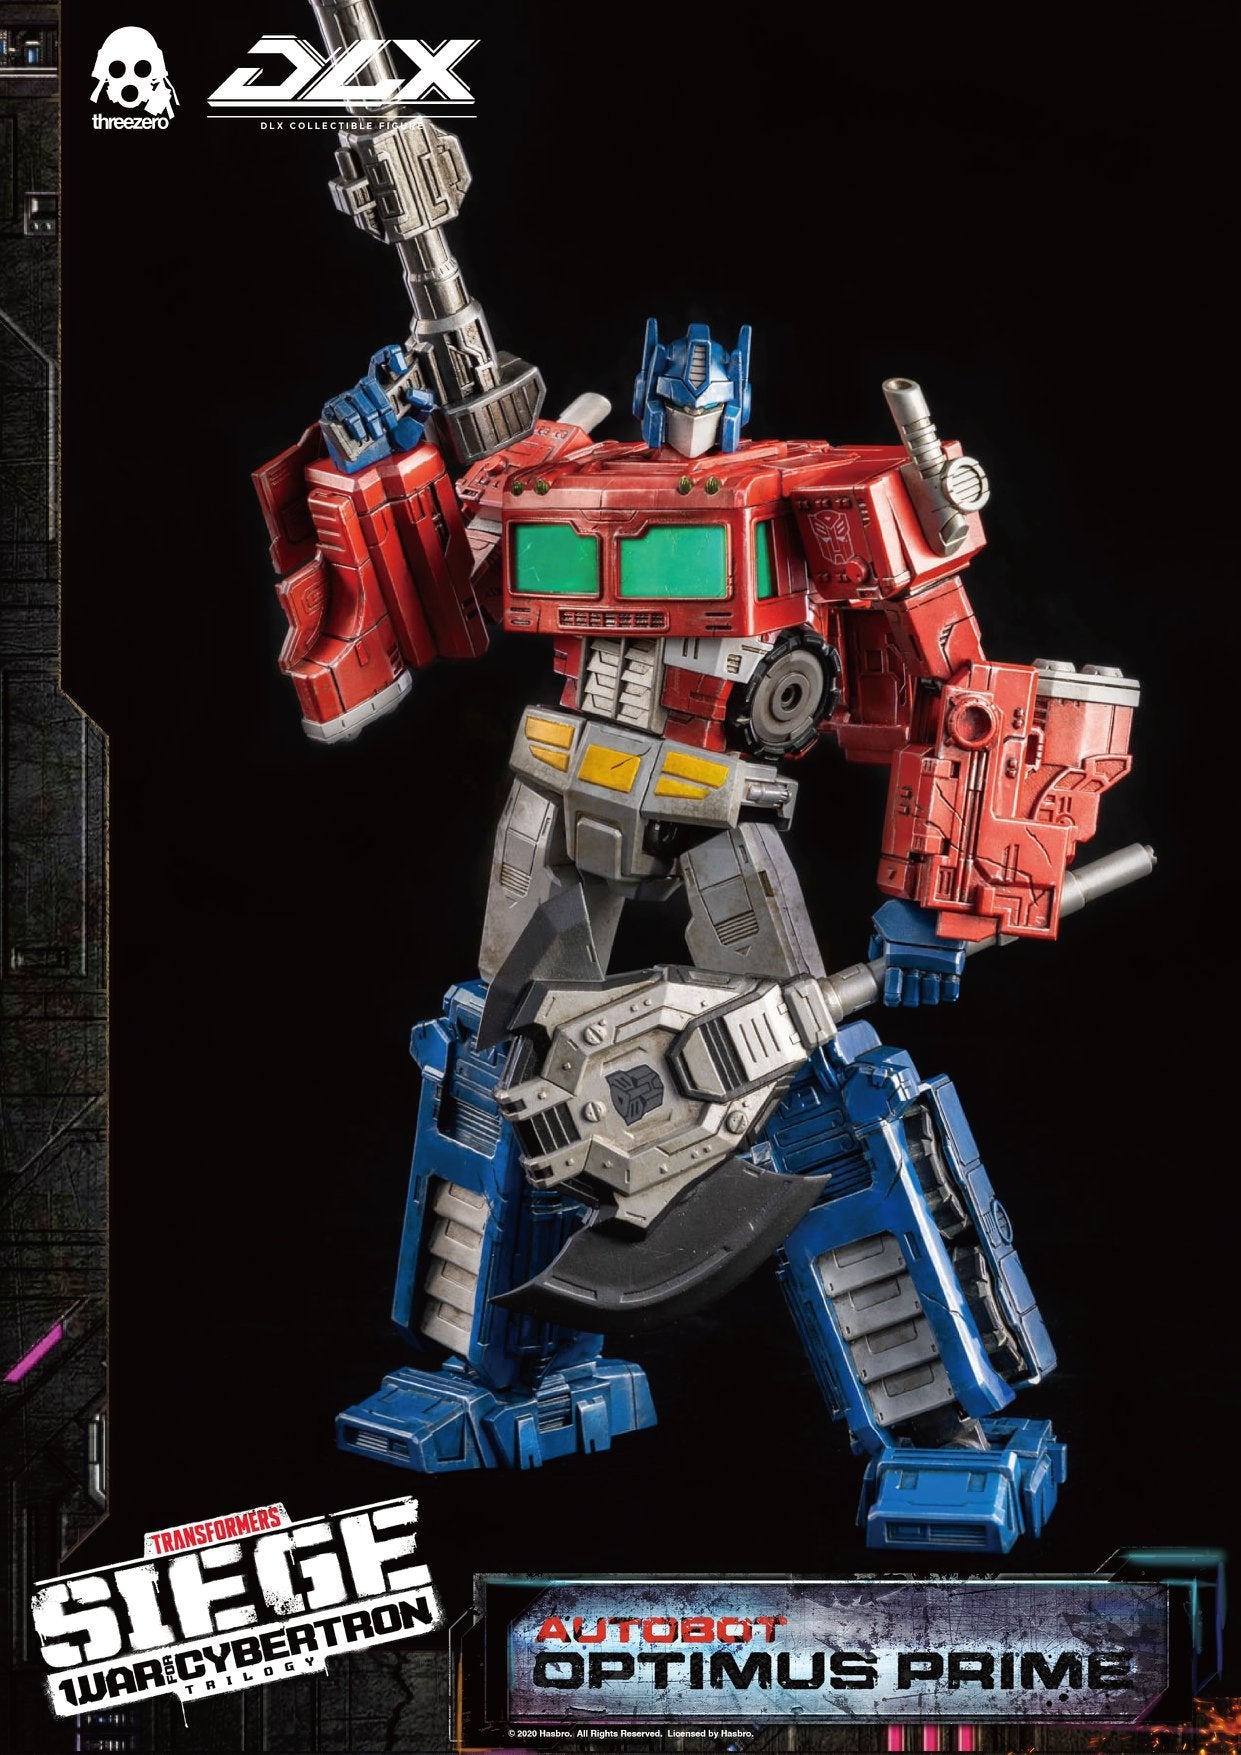 Pedido Figura DLX Optimus Prime - Transformers: War For Cybertron marca Threezero 3Z0202